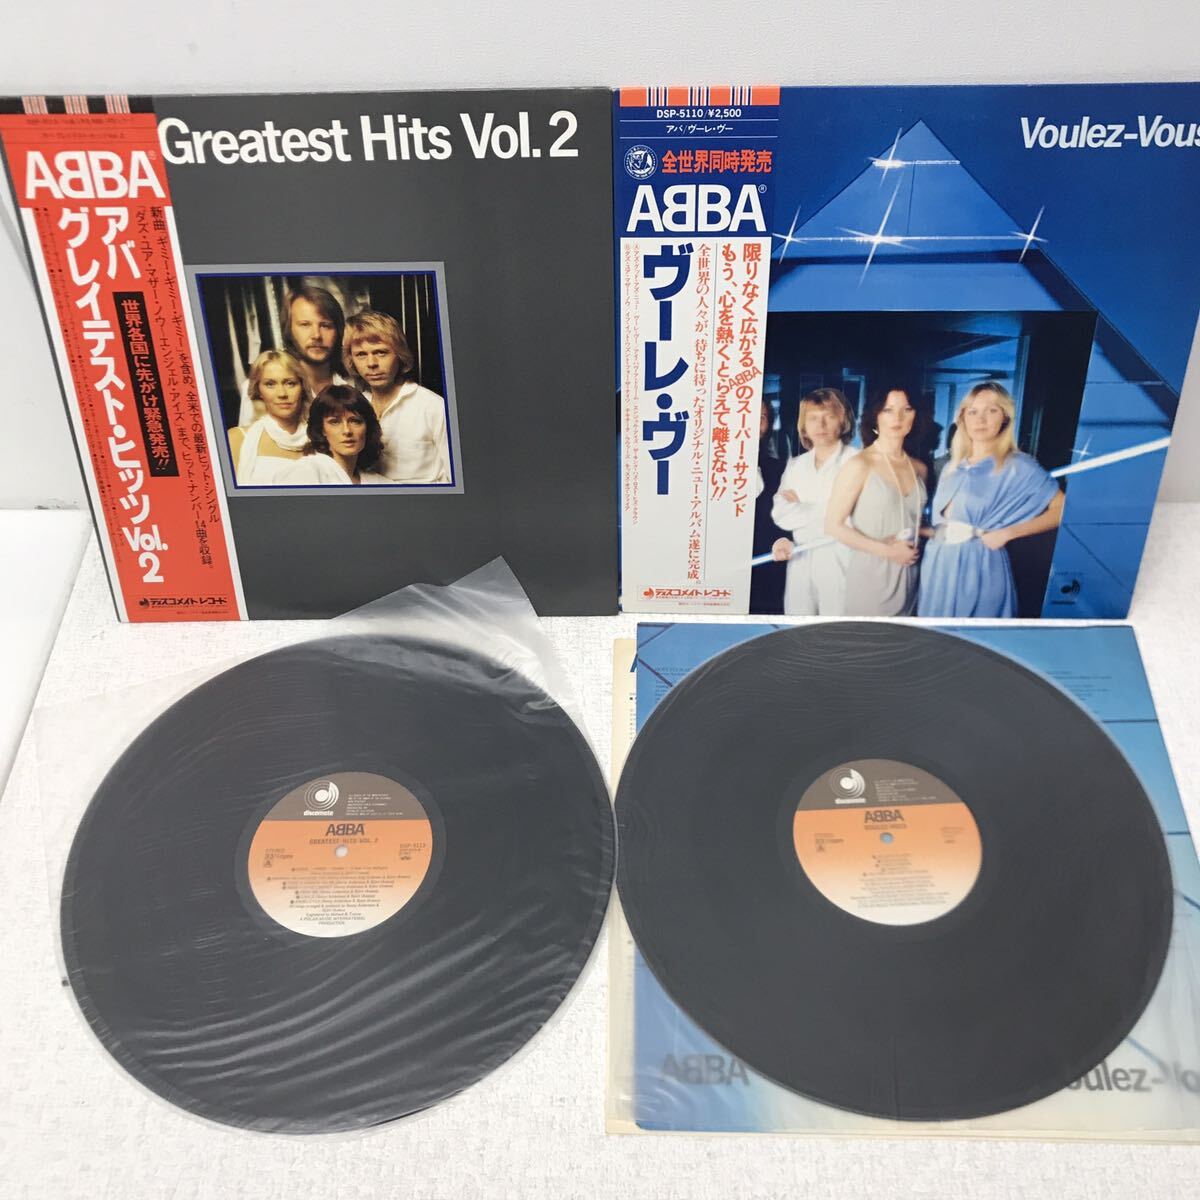 I0517A3 ABBA アバ LP レコード 5巻セット 音楽 洋楽 / グレイテスト・ヒッツ vol.2 / ヴーレ・ヴー / アライバル / THE ALBUM 他_画像4